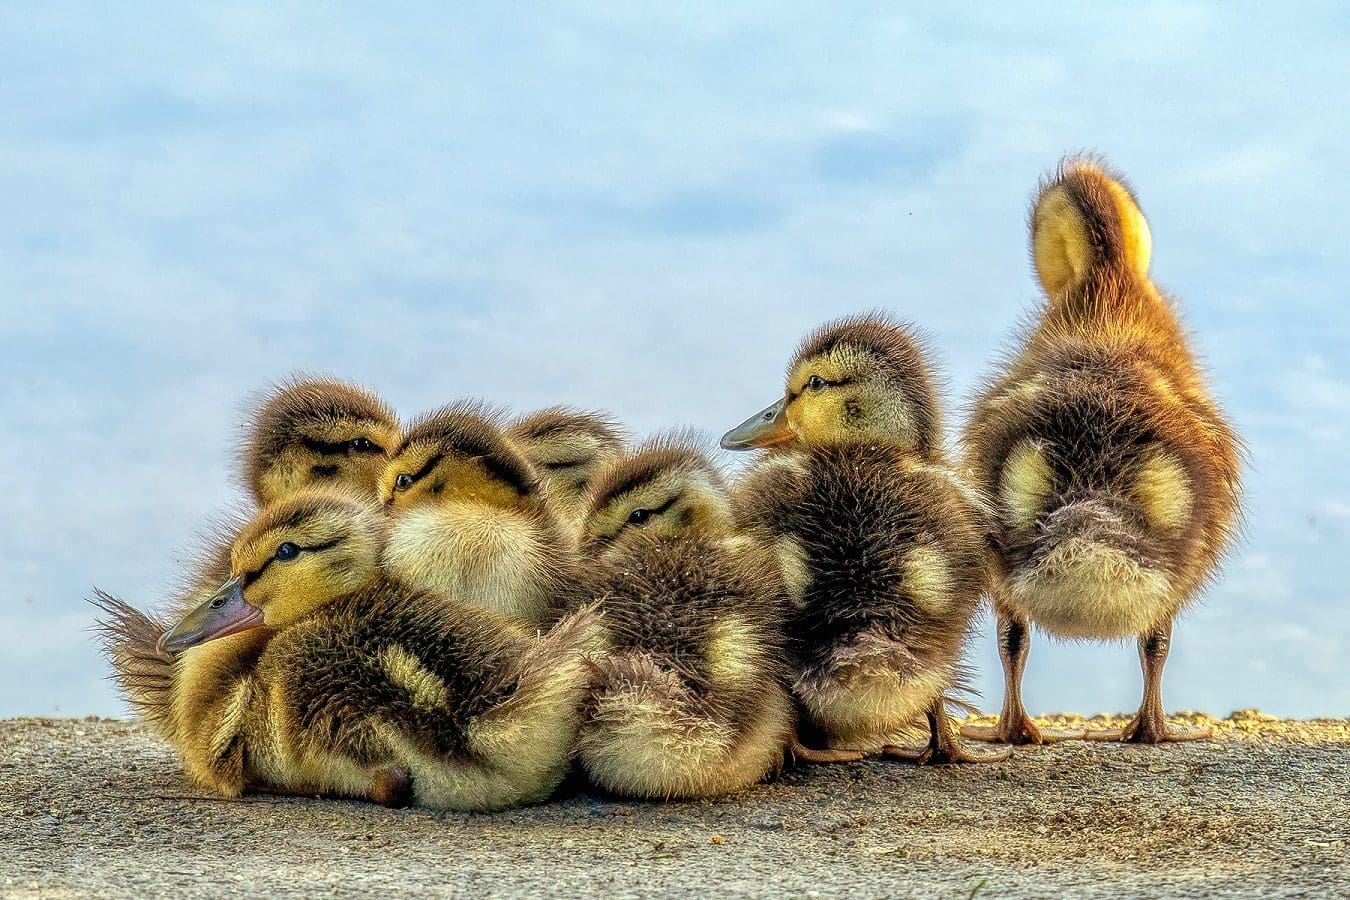 Fuzzy ducklings!